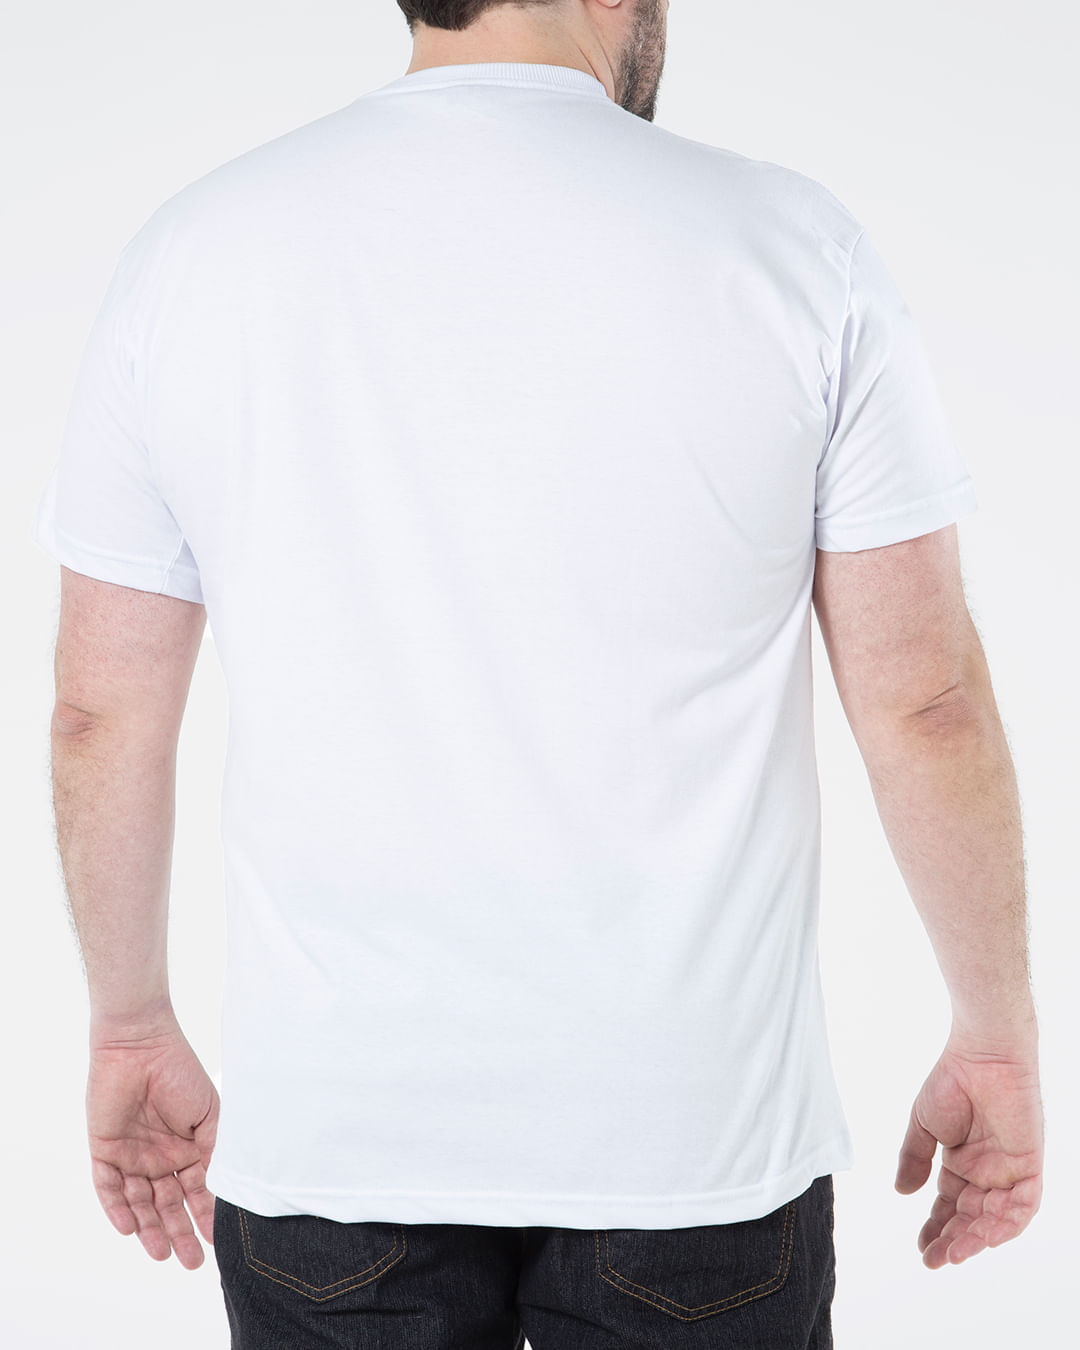 Camiseta-Masculina-Plus-Size-Estampada-Surf-Fatal-Branca